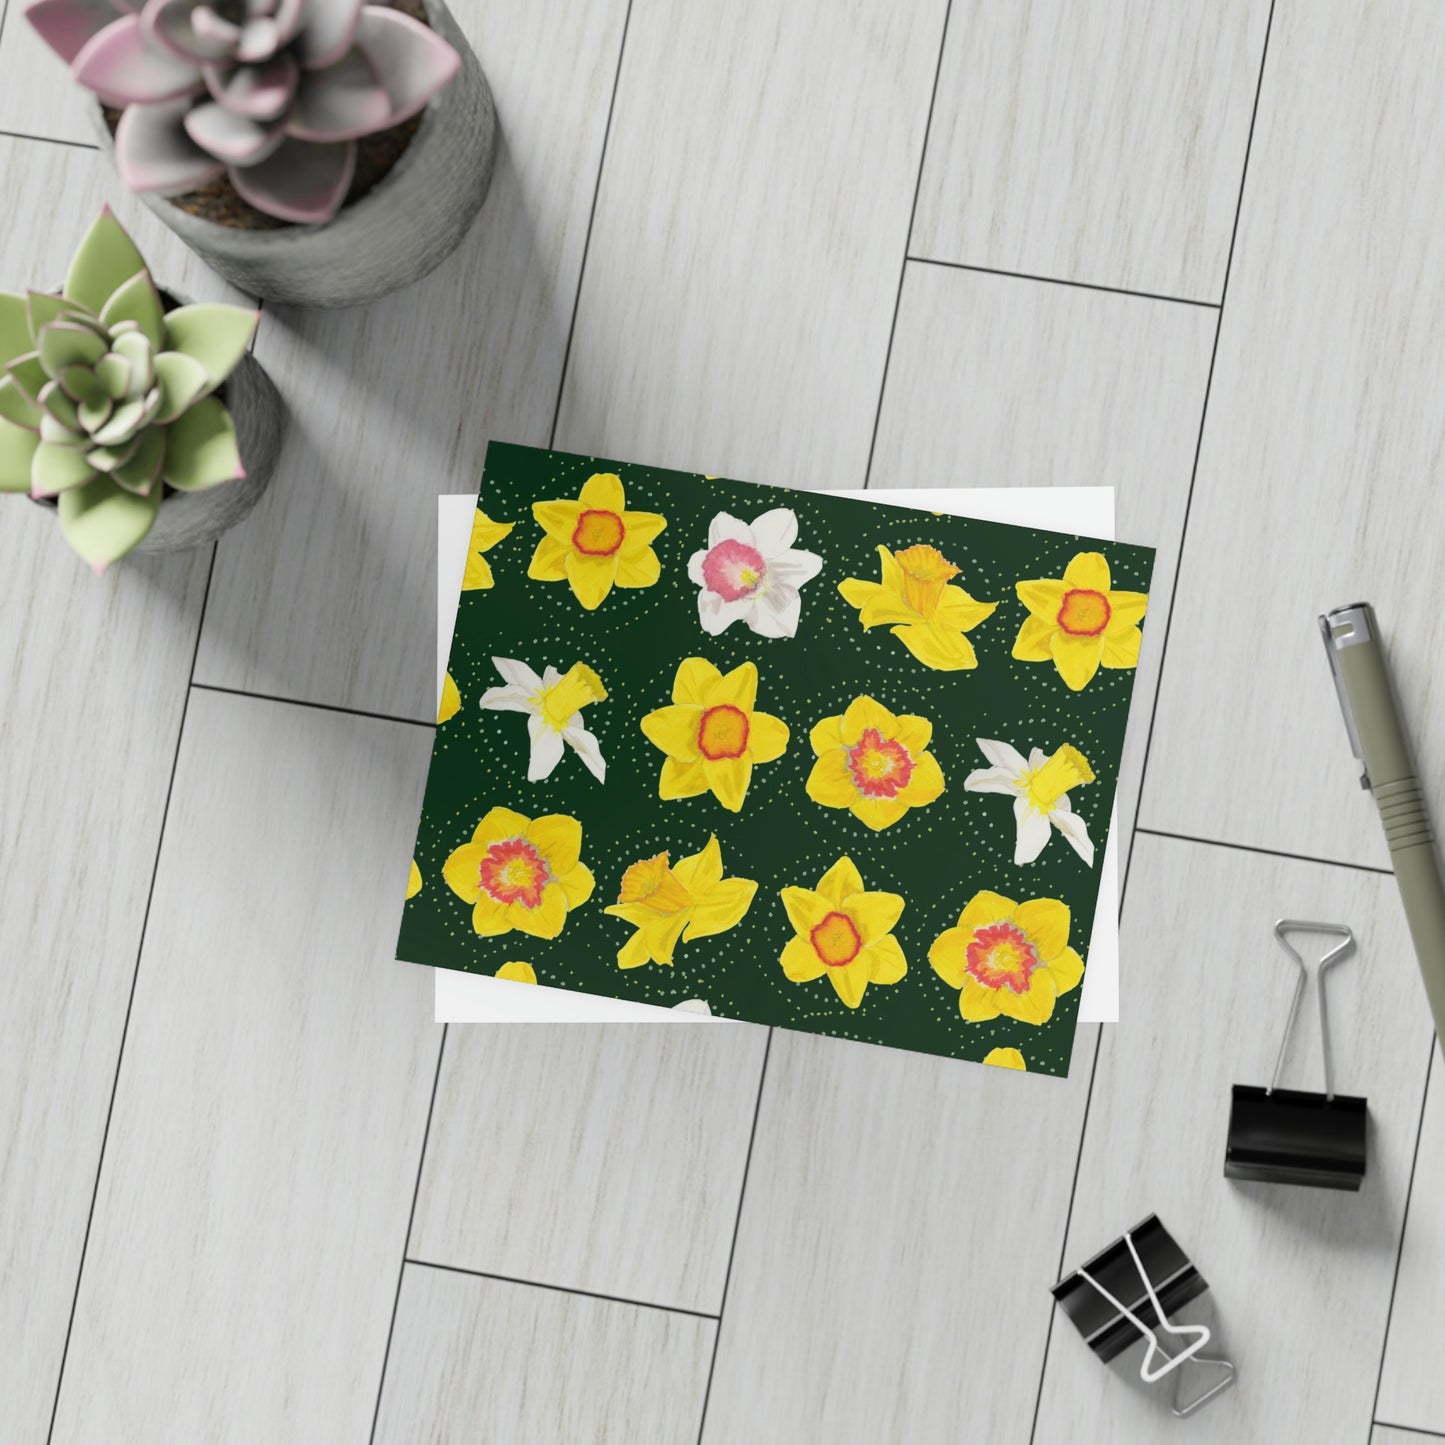 Daffodil Festival Greeting Card Bundle - Daffodils on Dark Green